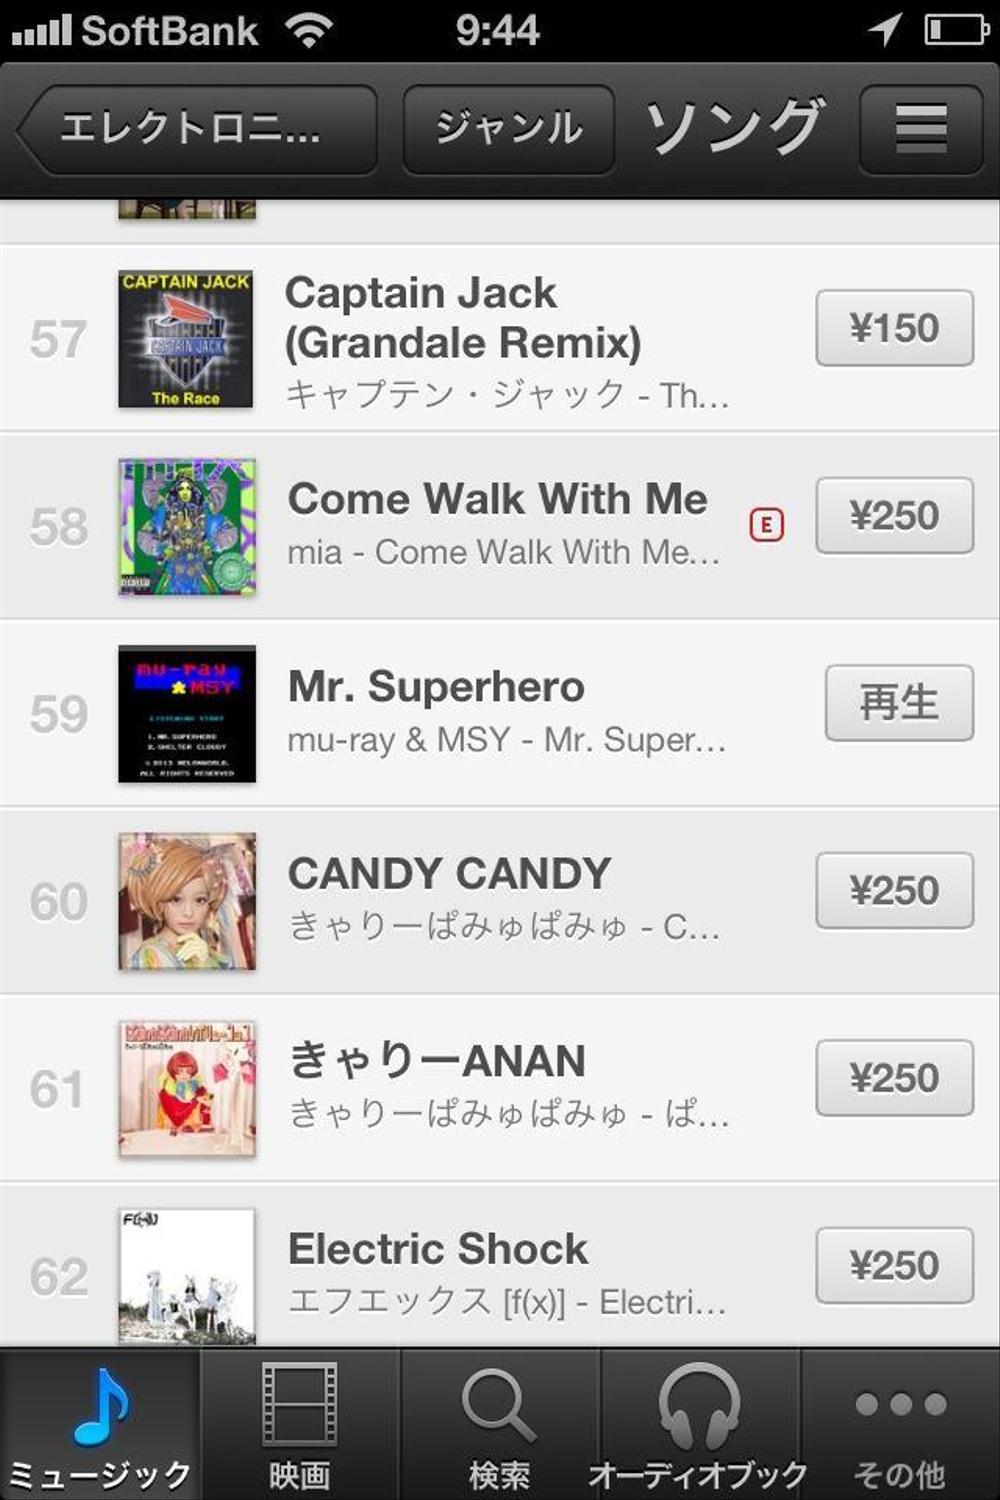 シングル『Mr. Superhero』iTunes エレクトロニック・トップソング 最高59位